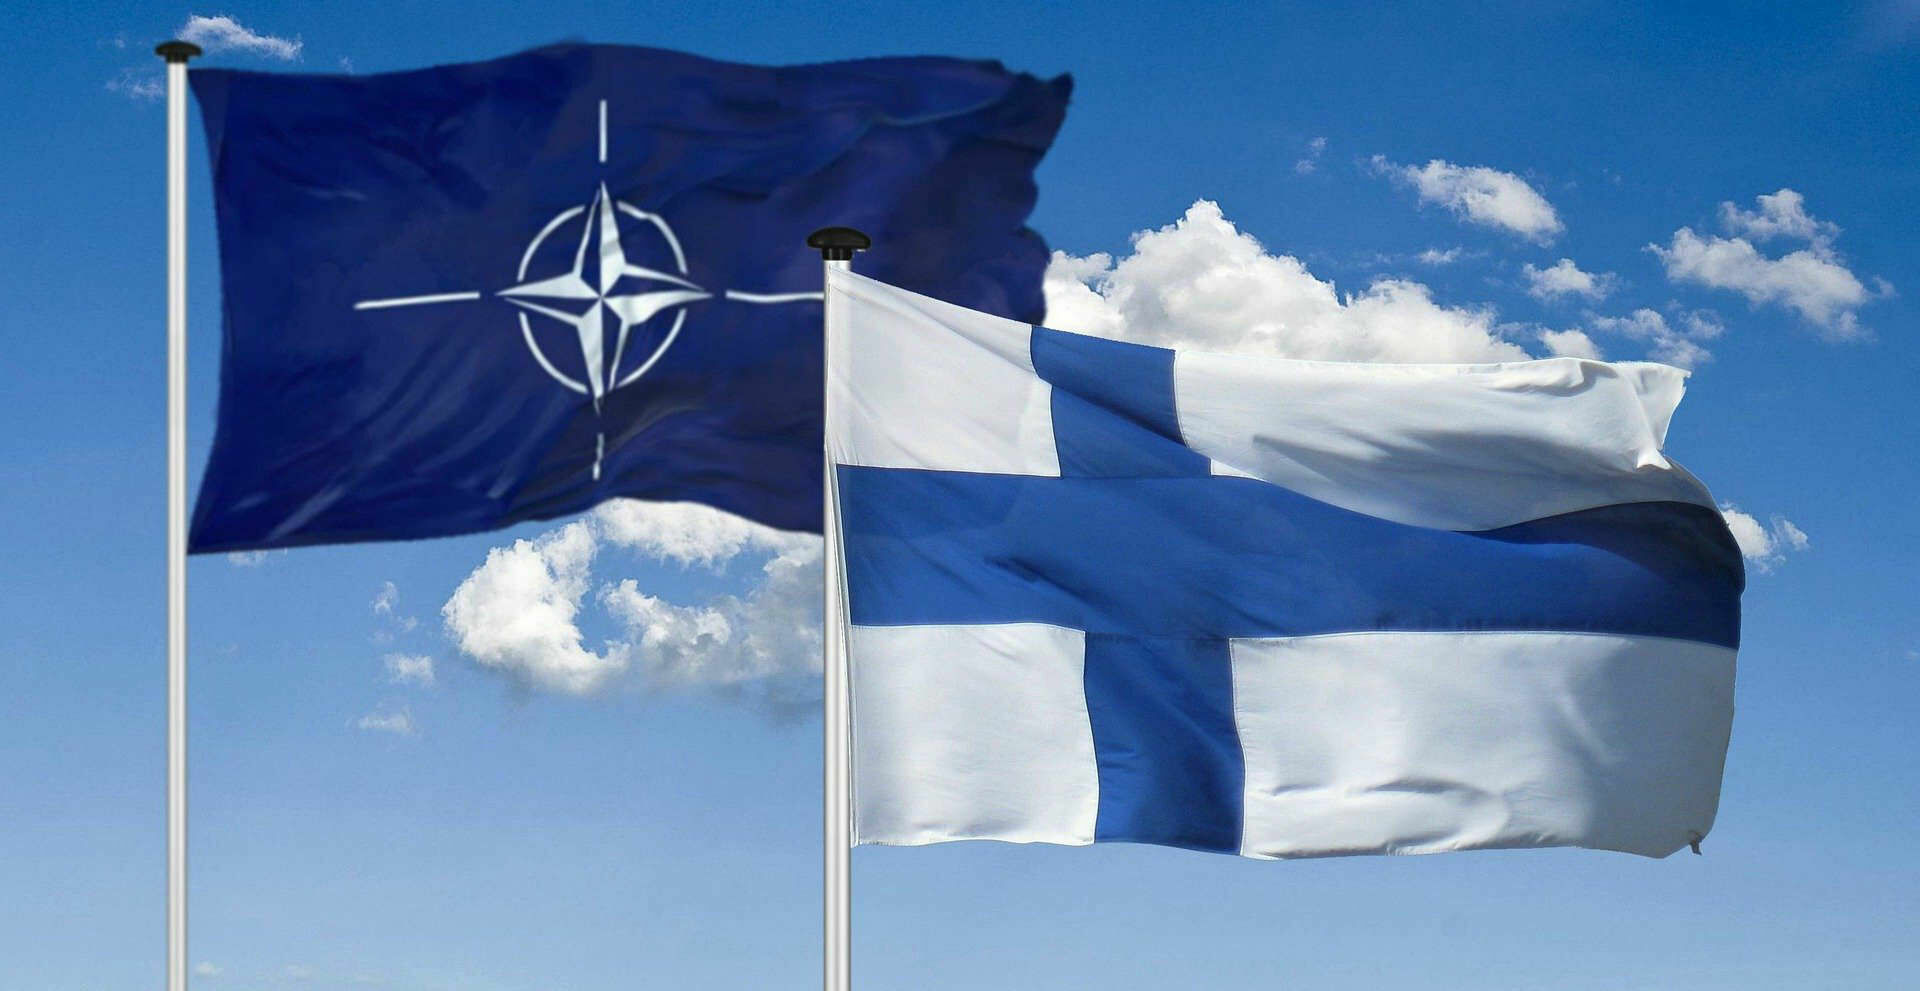 Финляндия заручилась поддержкой НАТО в случае угрозы даже до вступления в альянс